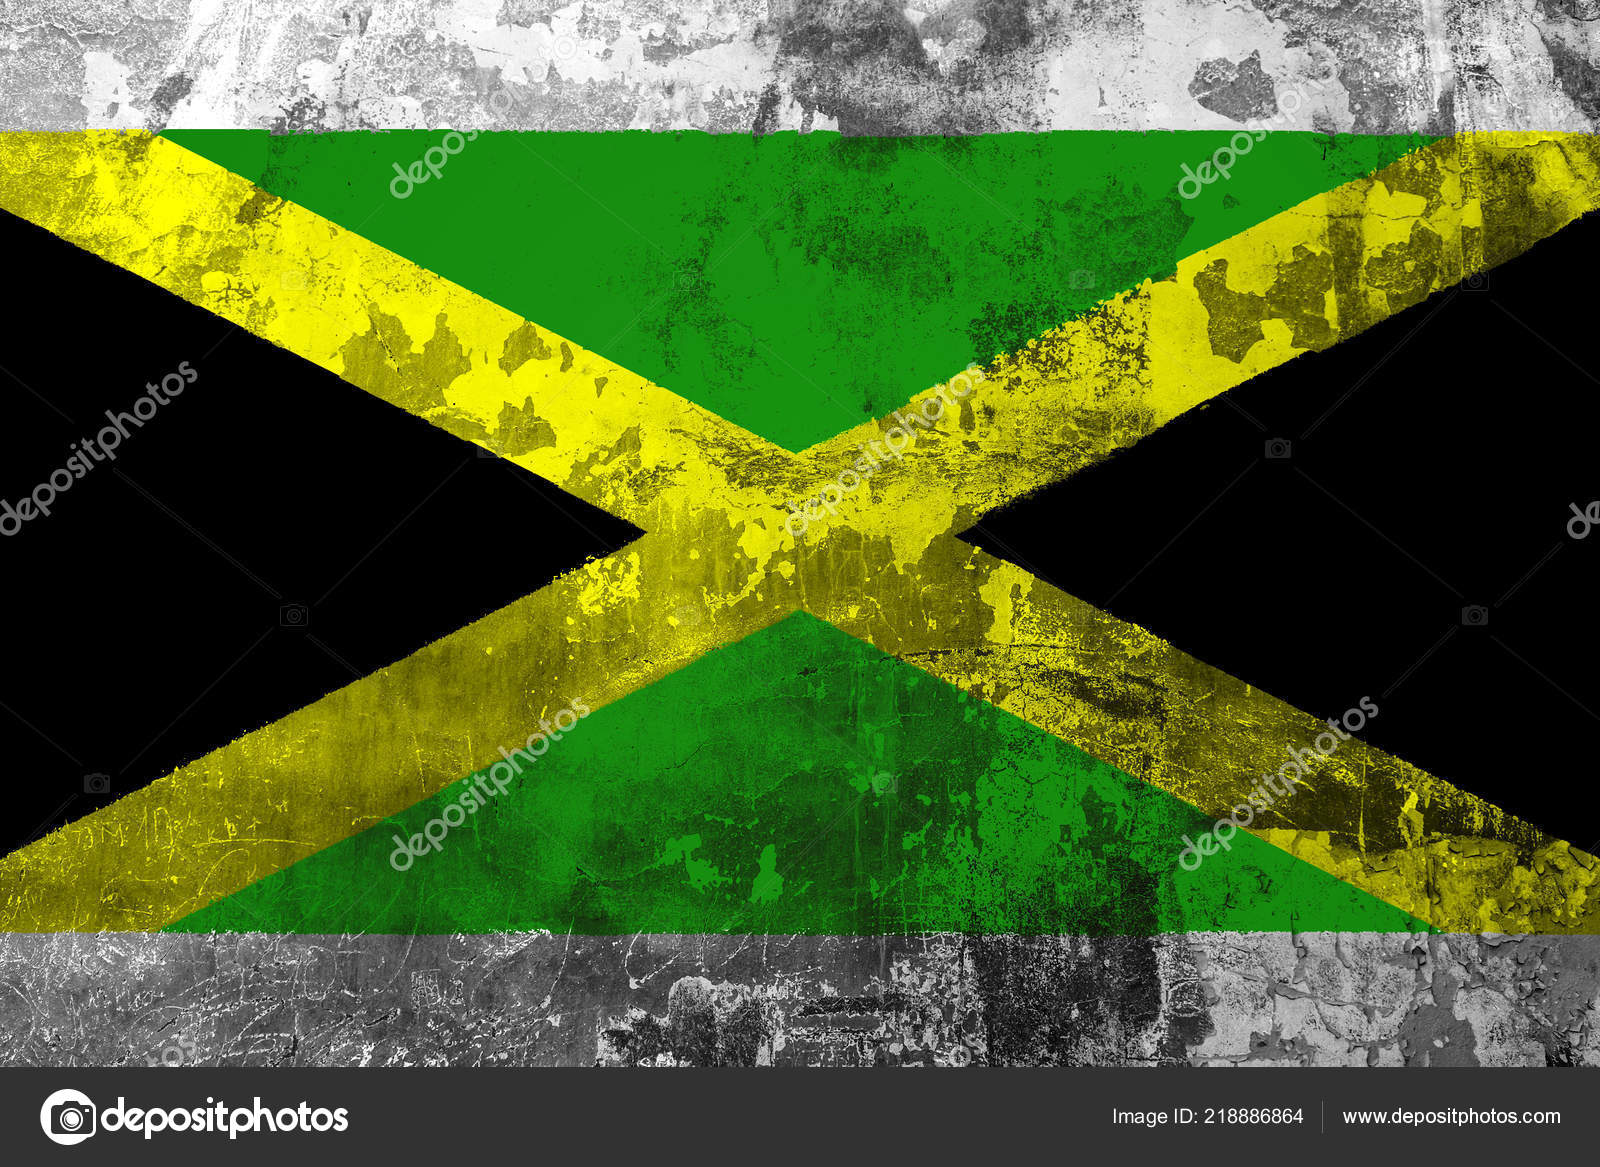 ジャマイカ写真素材 ロイヤリティフリージャマイカ画像 Depositphotos